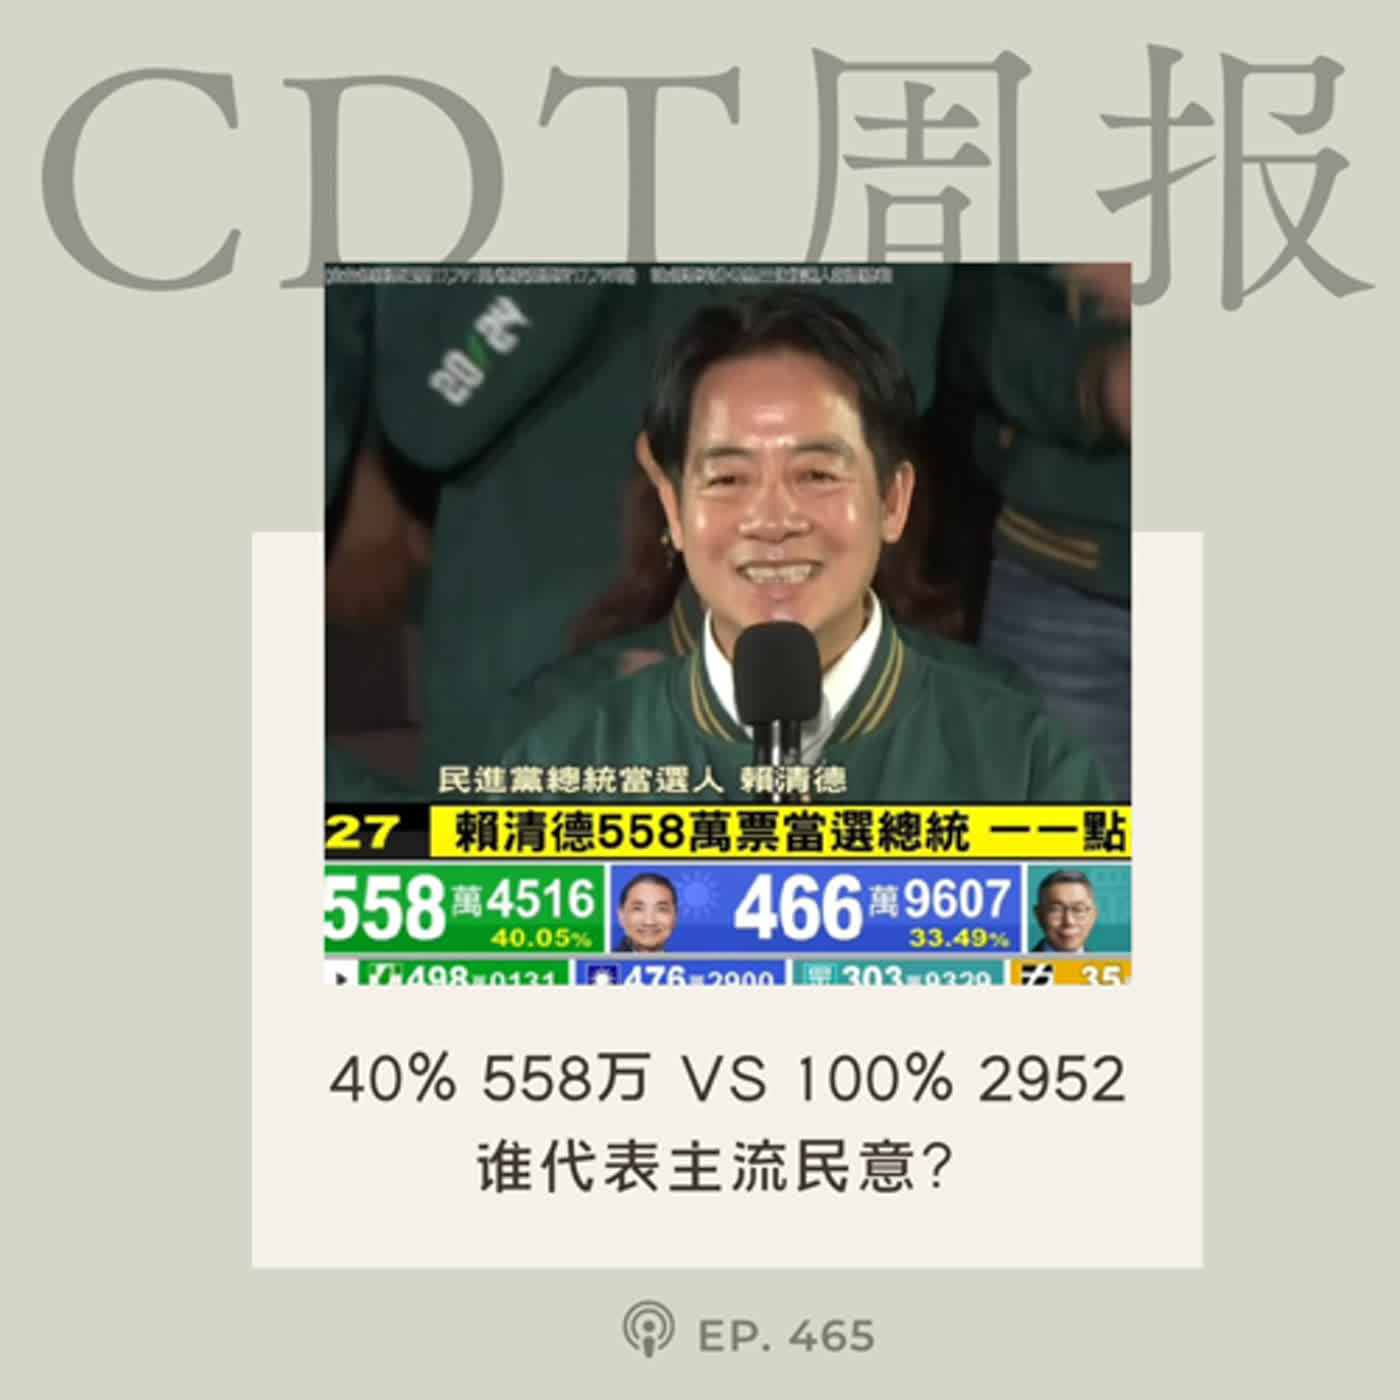 【第465期】CDT周报：40% 558万 vs 100% 2952，谁代表主流民意？